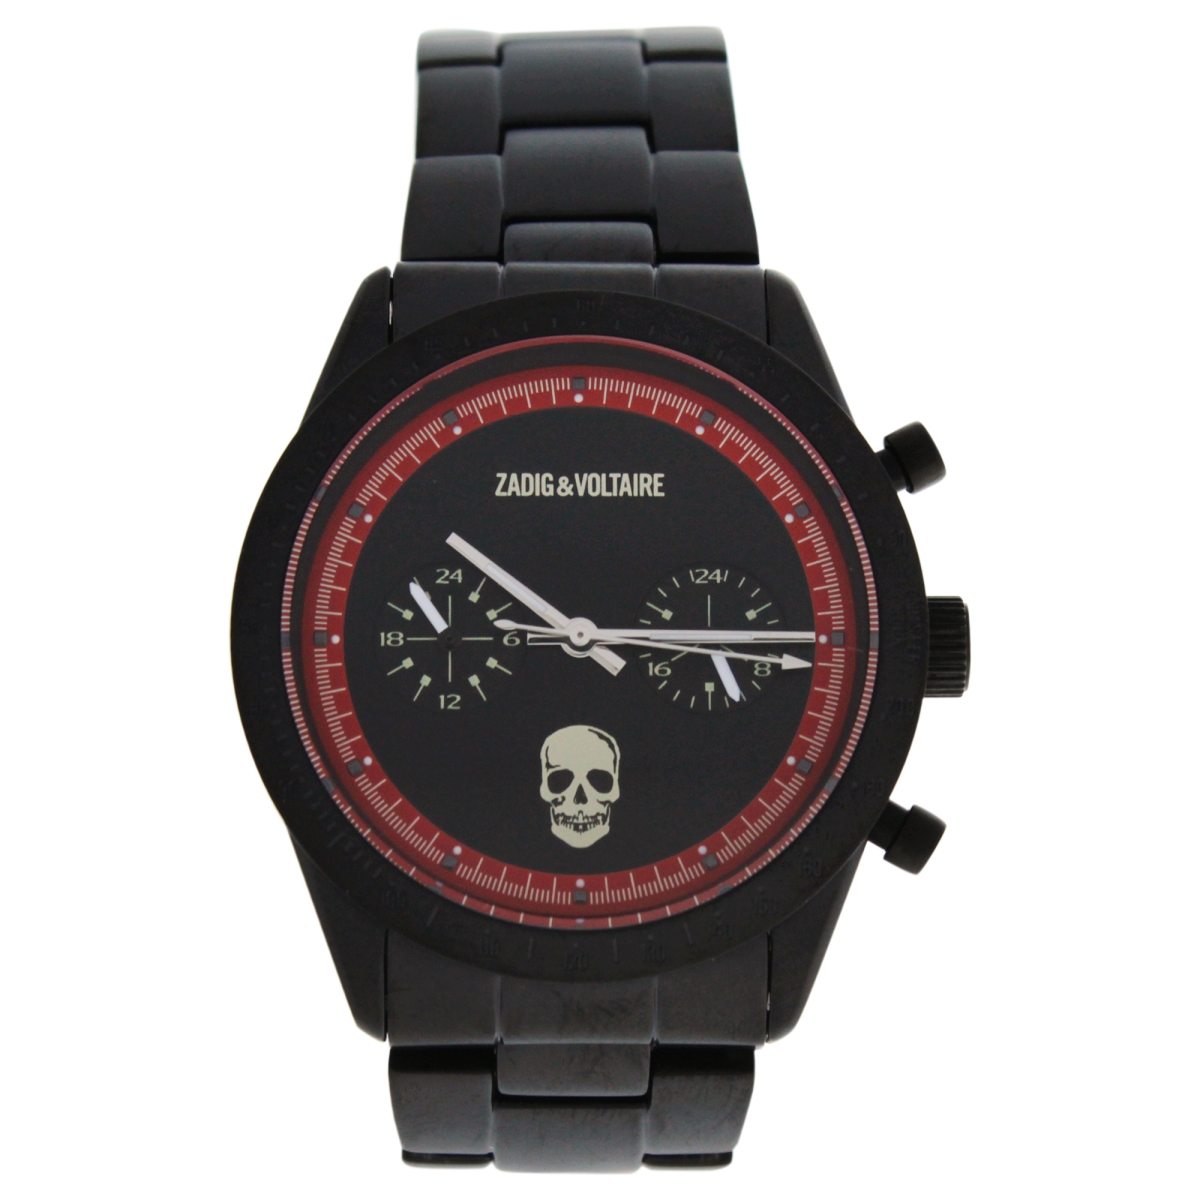 U-wat-1057 Zvm123 Black Stainless Steel Bracelet Watch For Unisex